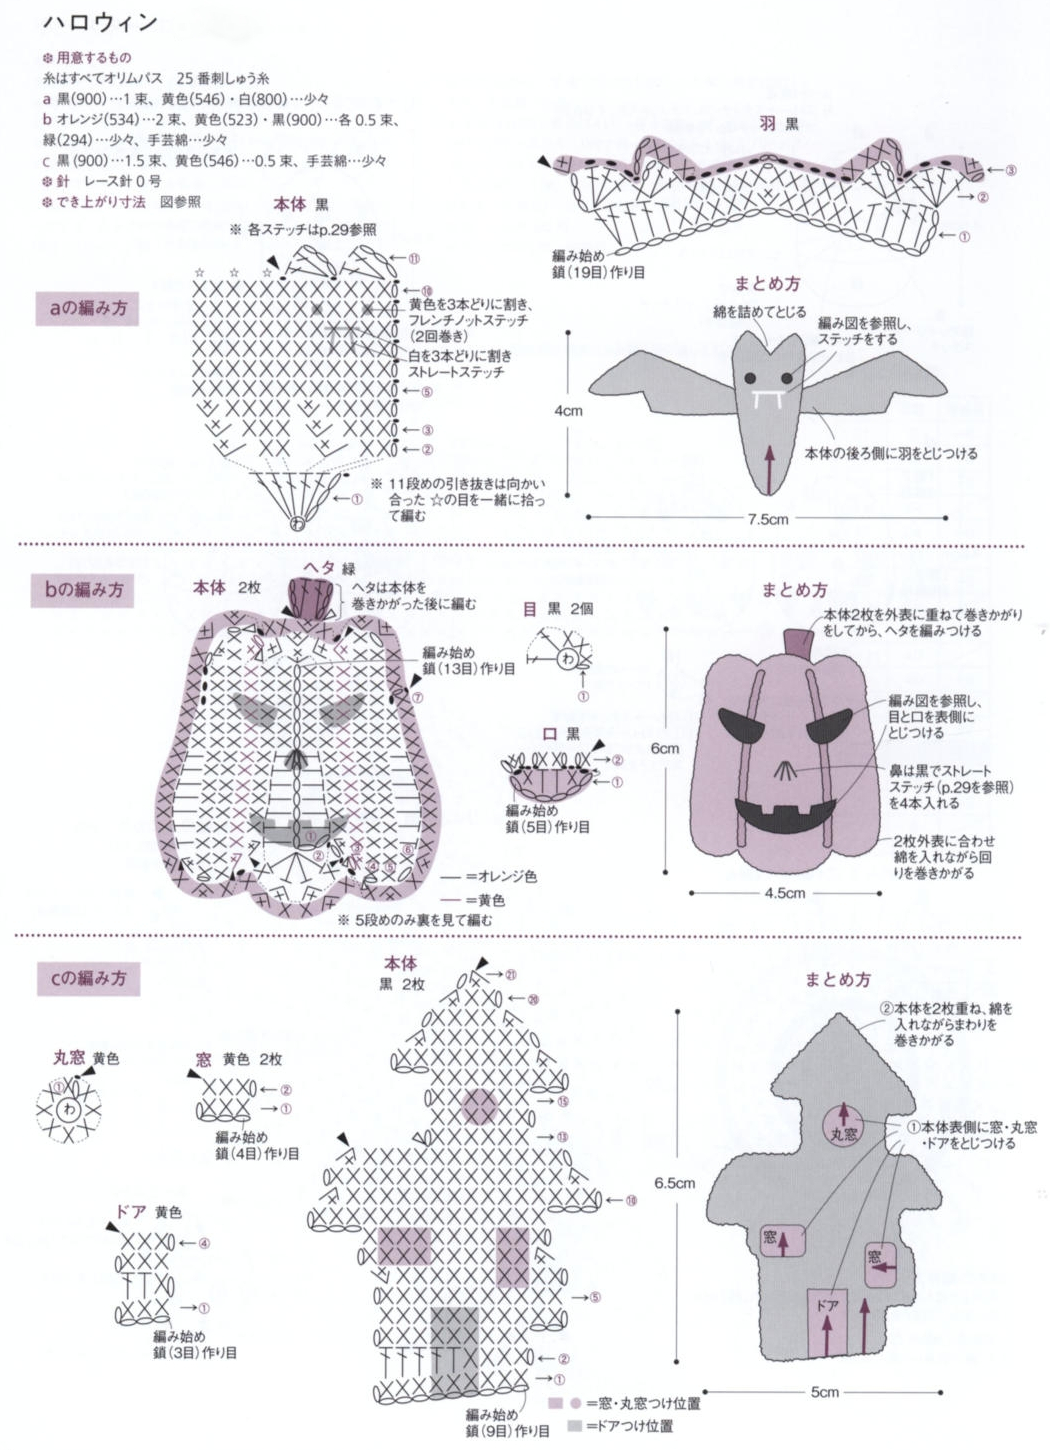 Free Crochet Pattern Halloween Set: Bat, Pumpkin and Haunted House Scheme